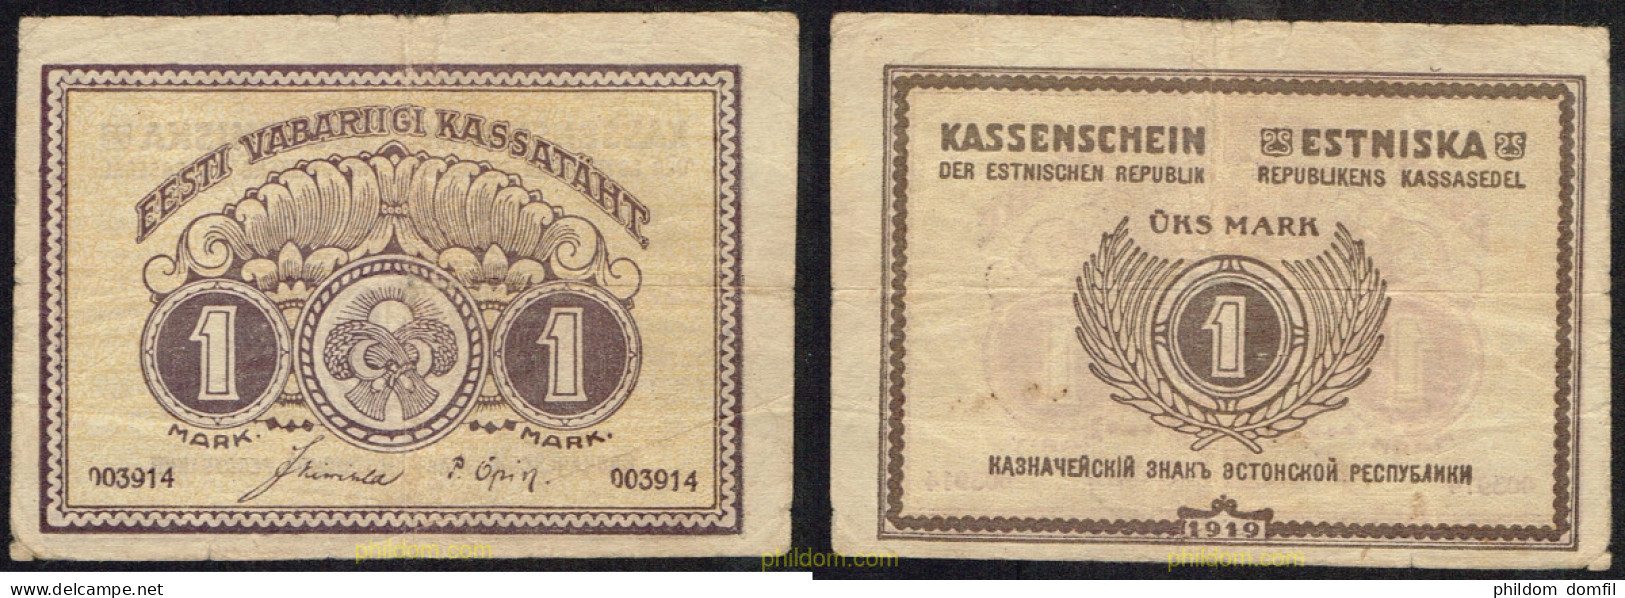 4783 ESTONIA 1919 ESTONIA 1 MARK 1919 - Estland